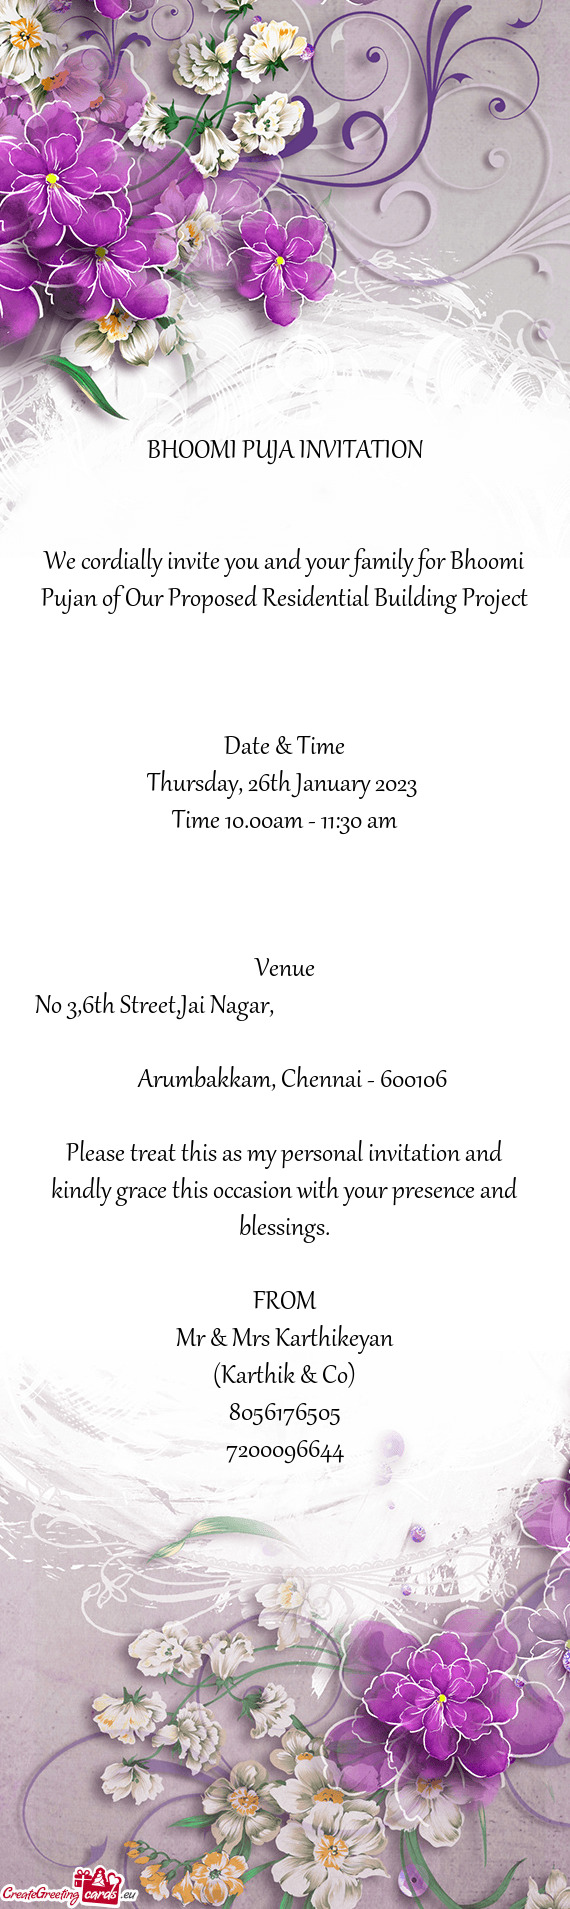 BHOOMI PUJA INVITATION